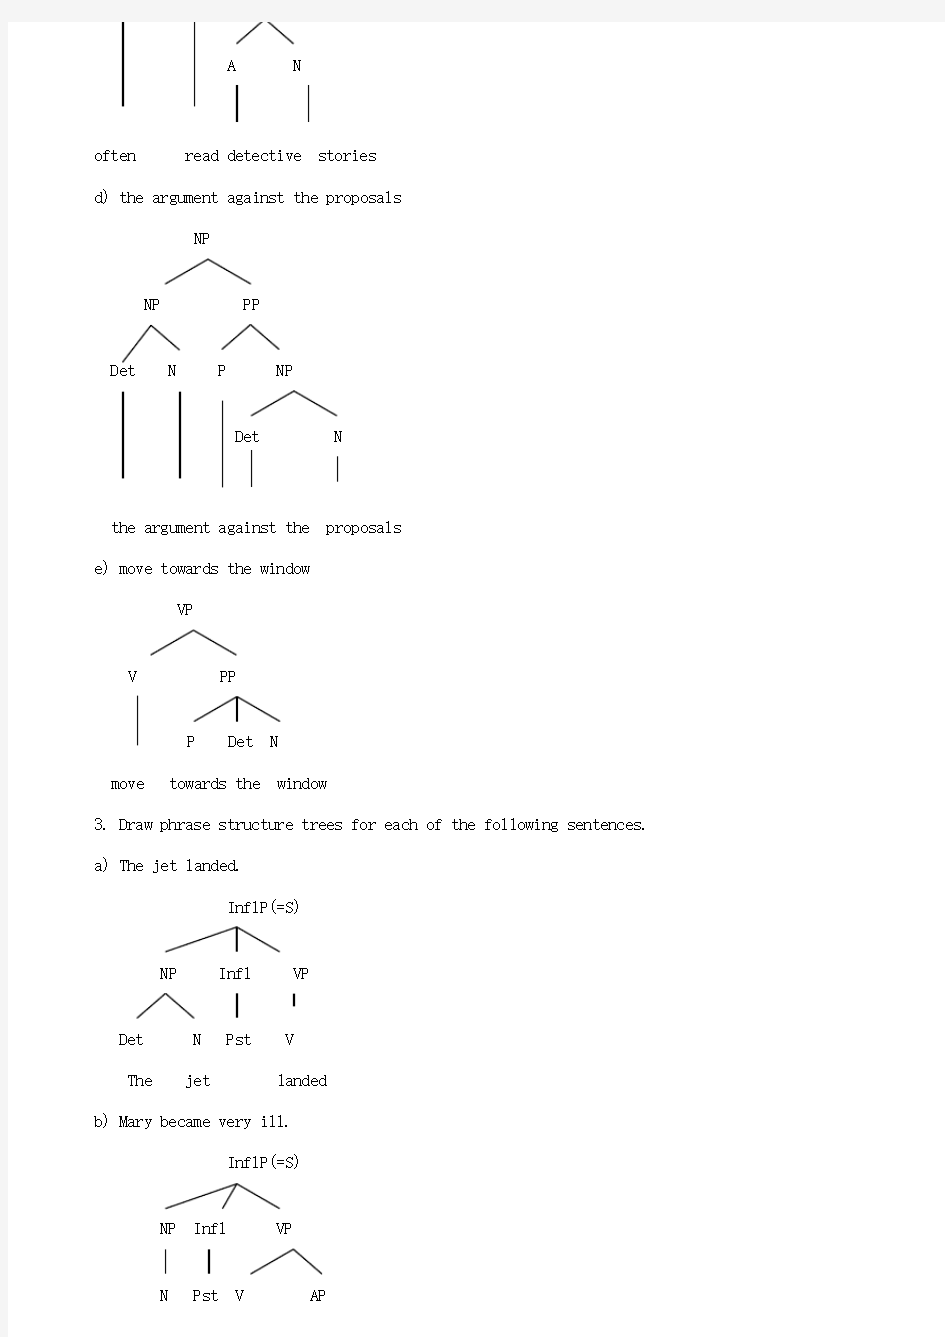 英语语言学树形图举例